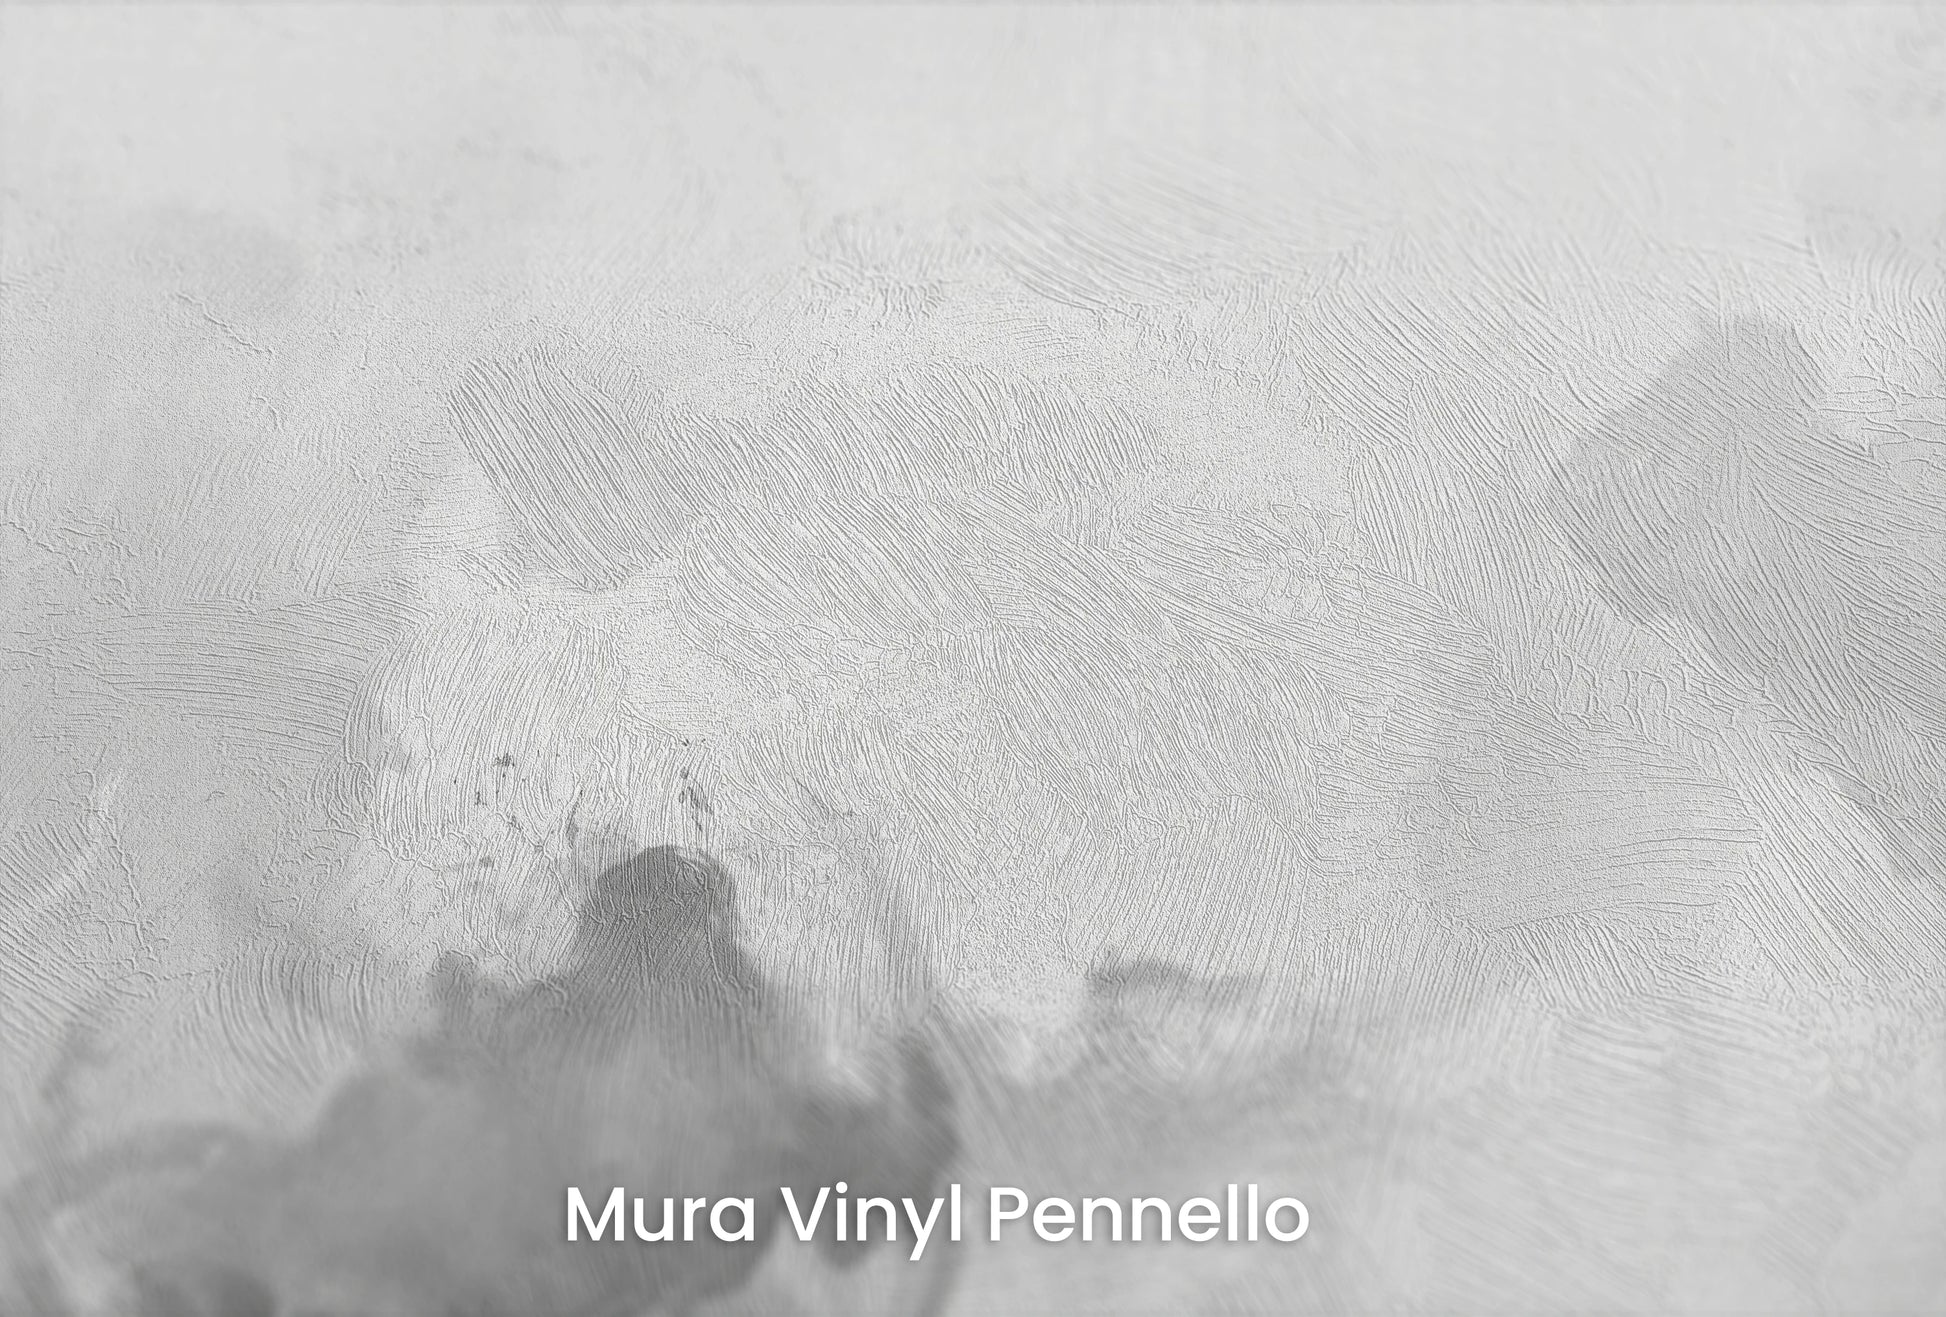 Zbliżenie na artystyczną fototapetę o nazwie Muted Turmoil na podłożu Mura Vinyl Pennello - faktura pociągnięć pędzla malarskiego.